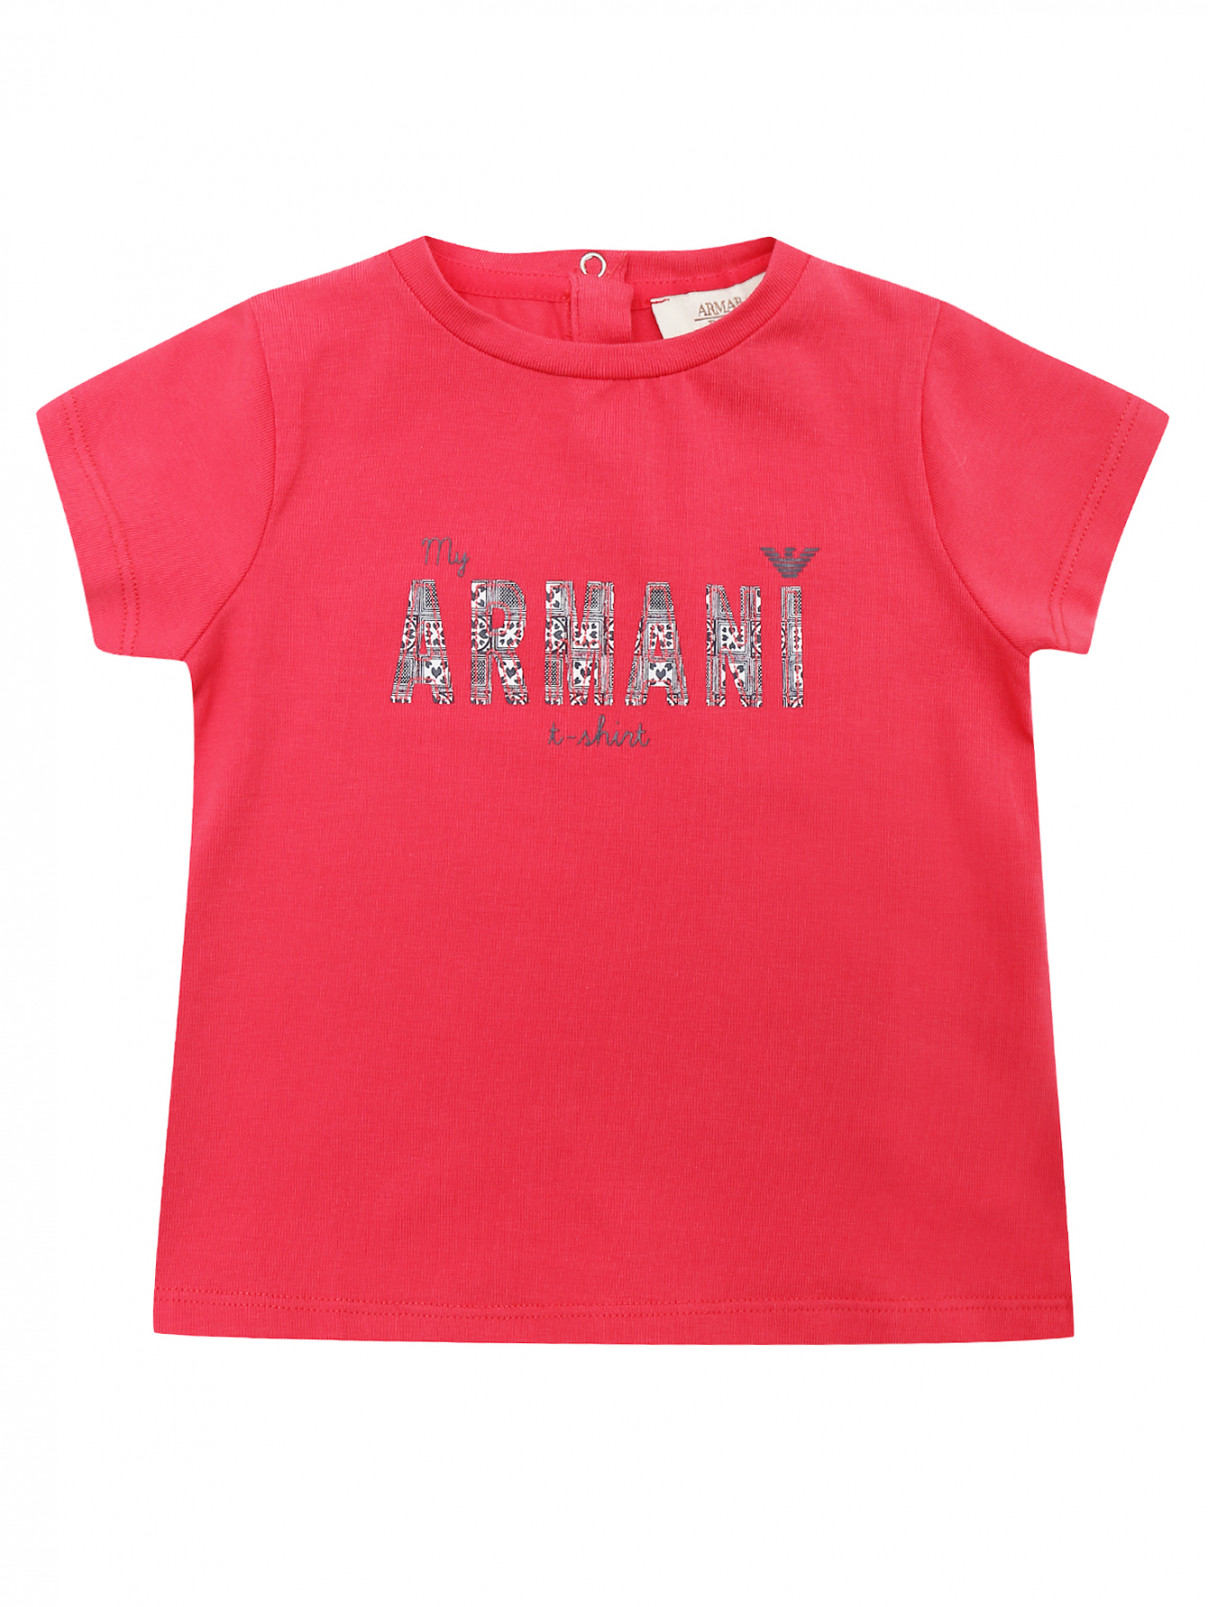 Футболка хлопковая с принтом Armani Junior  –  Общий вид  – Цвет:  Розовый